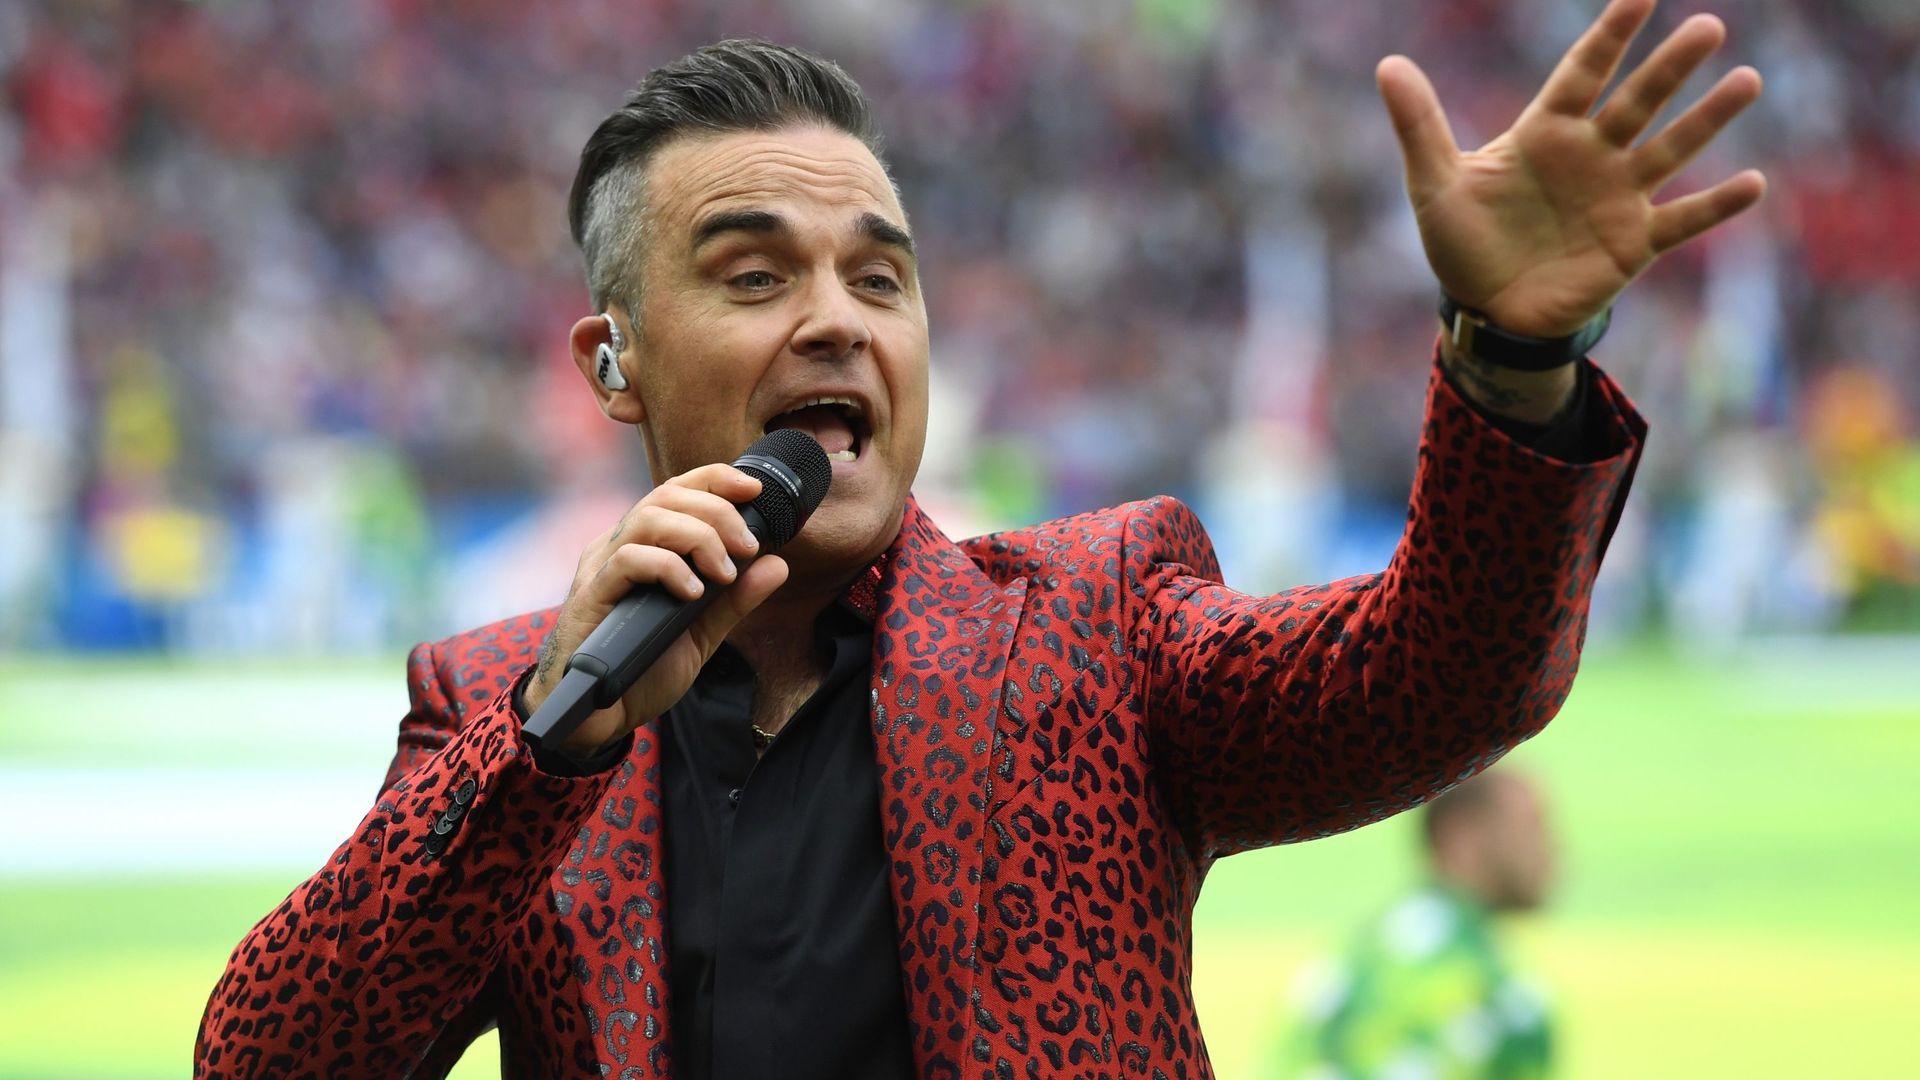 Le chanteur de pop-rock britannique Robbie Williams et sa femme Ayda Field occupent leur journée à se donner des rendez-vous galants, à bonne distance...